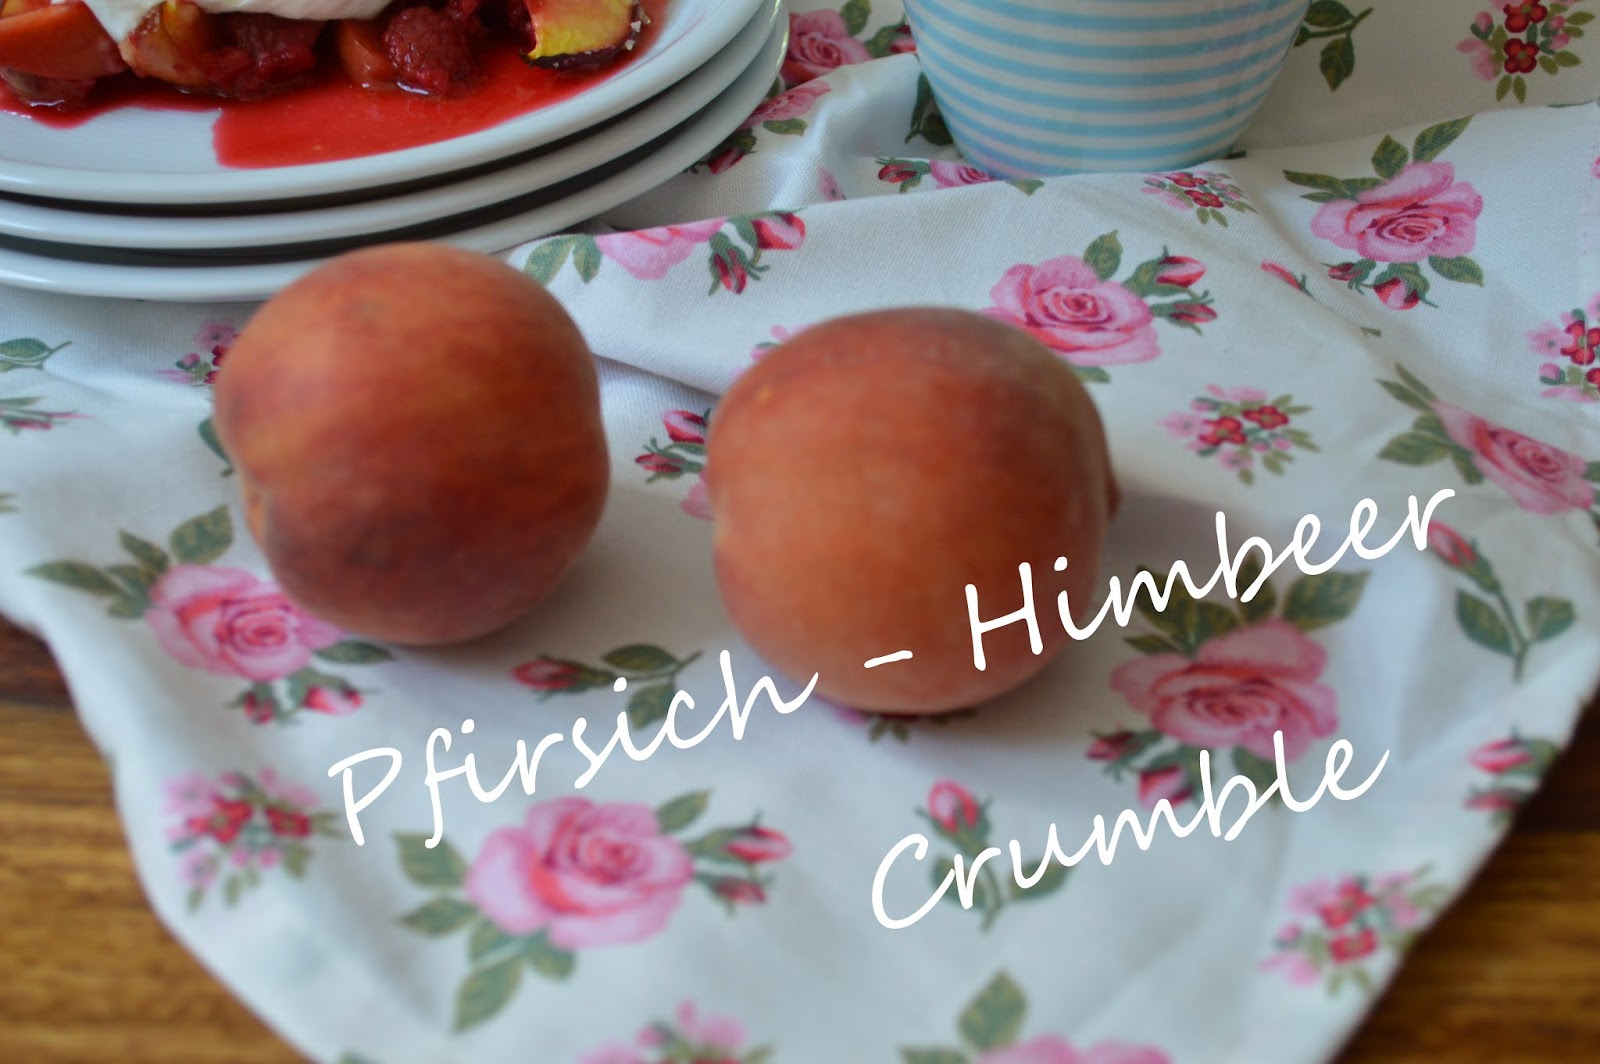 Zutaten zum Glück: Pfirsich-Himbeer-Crumble